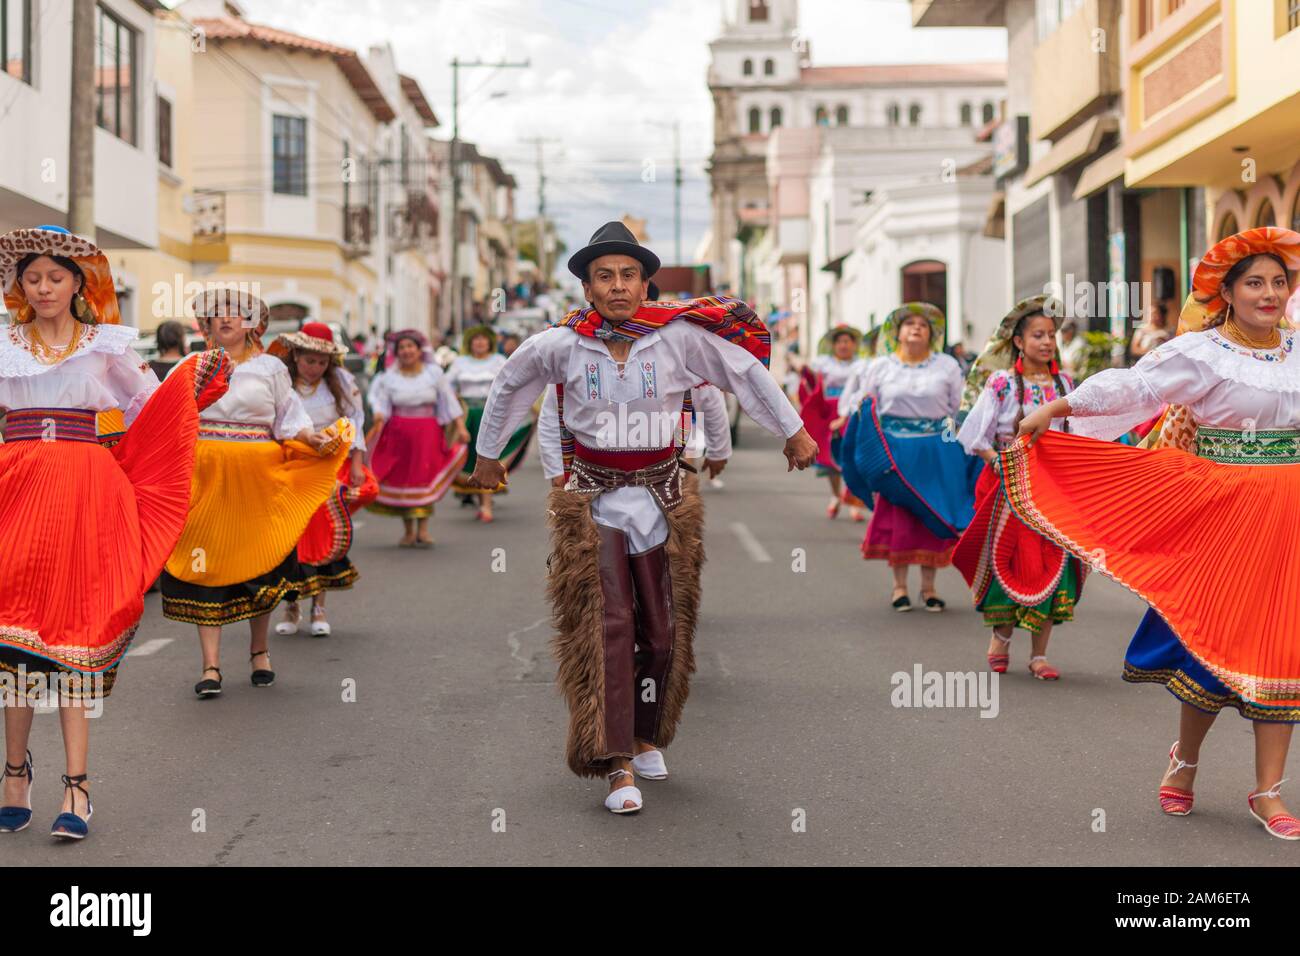 Participants in a new year street festival in Riobamba, Ecuador. Stock Photo